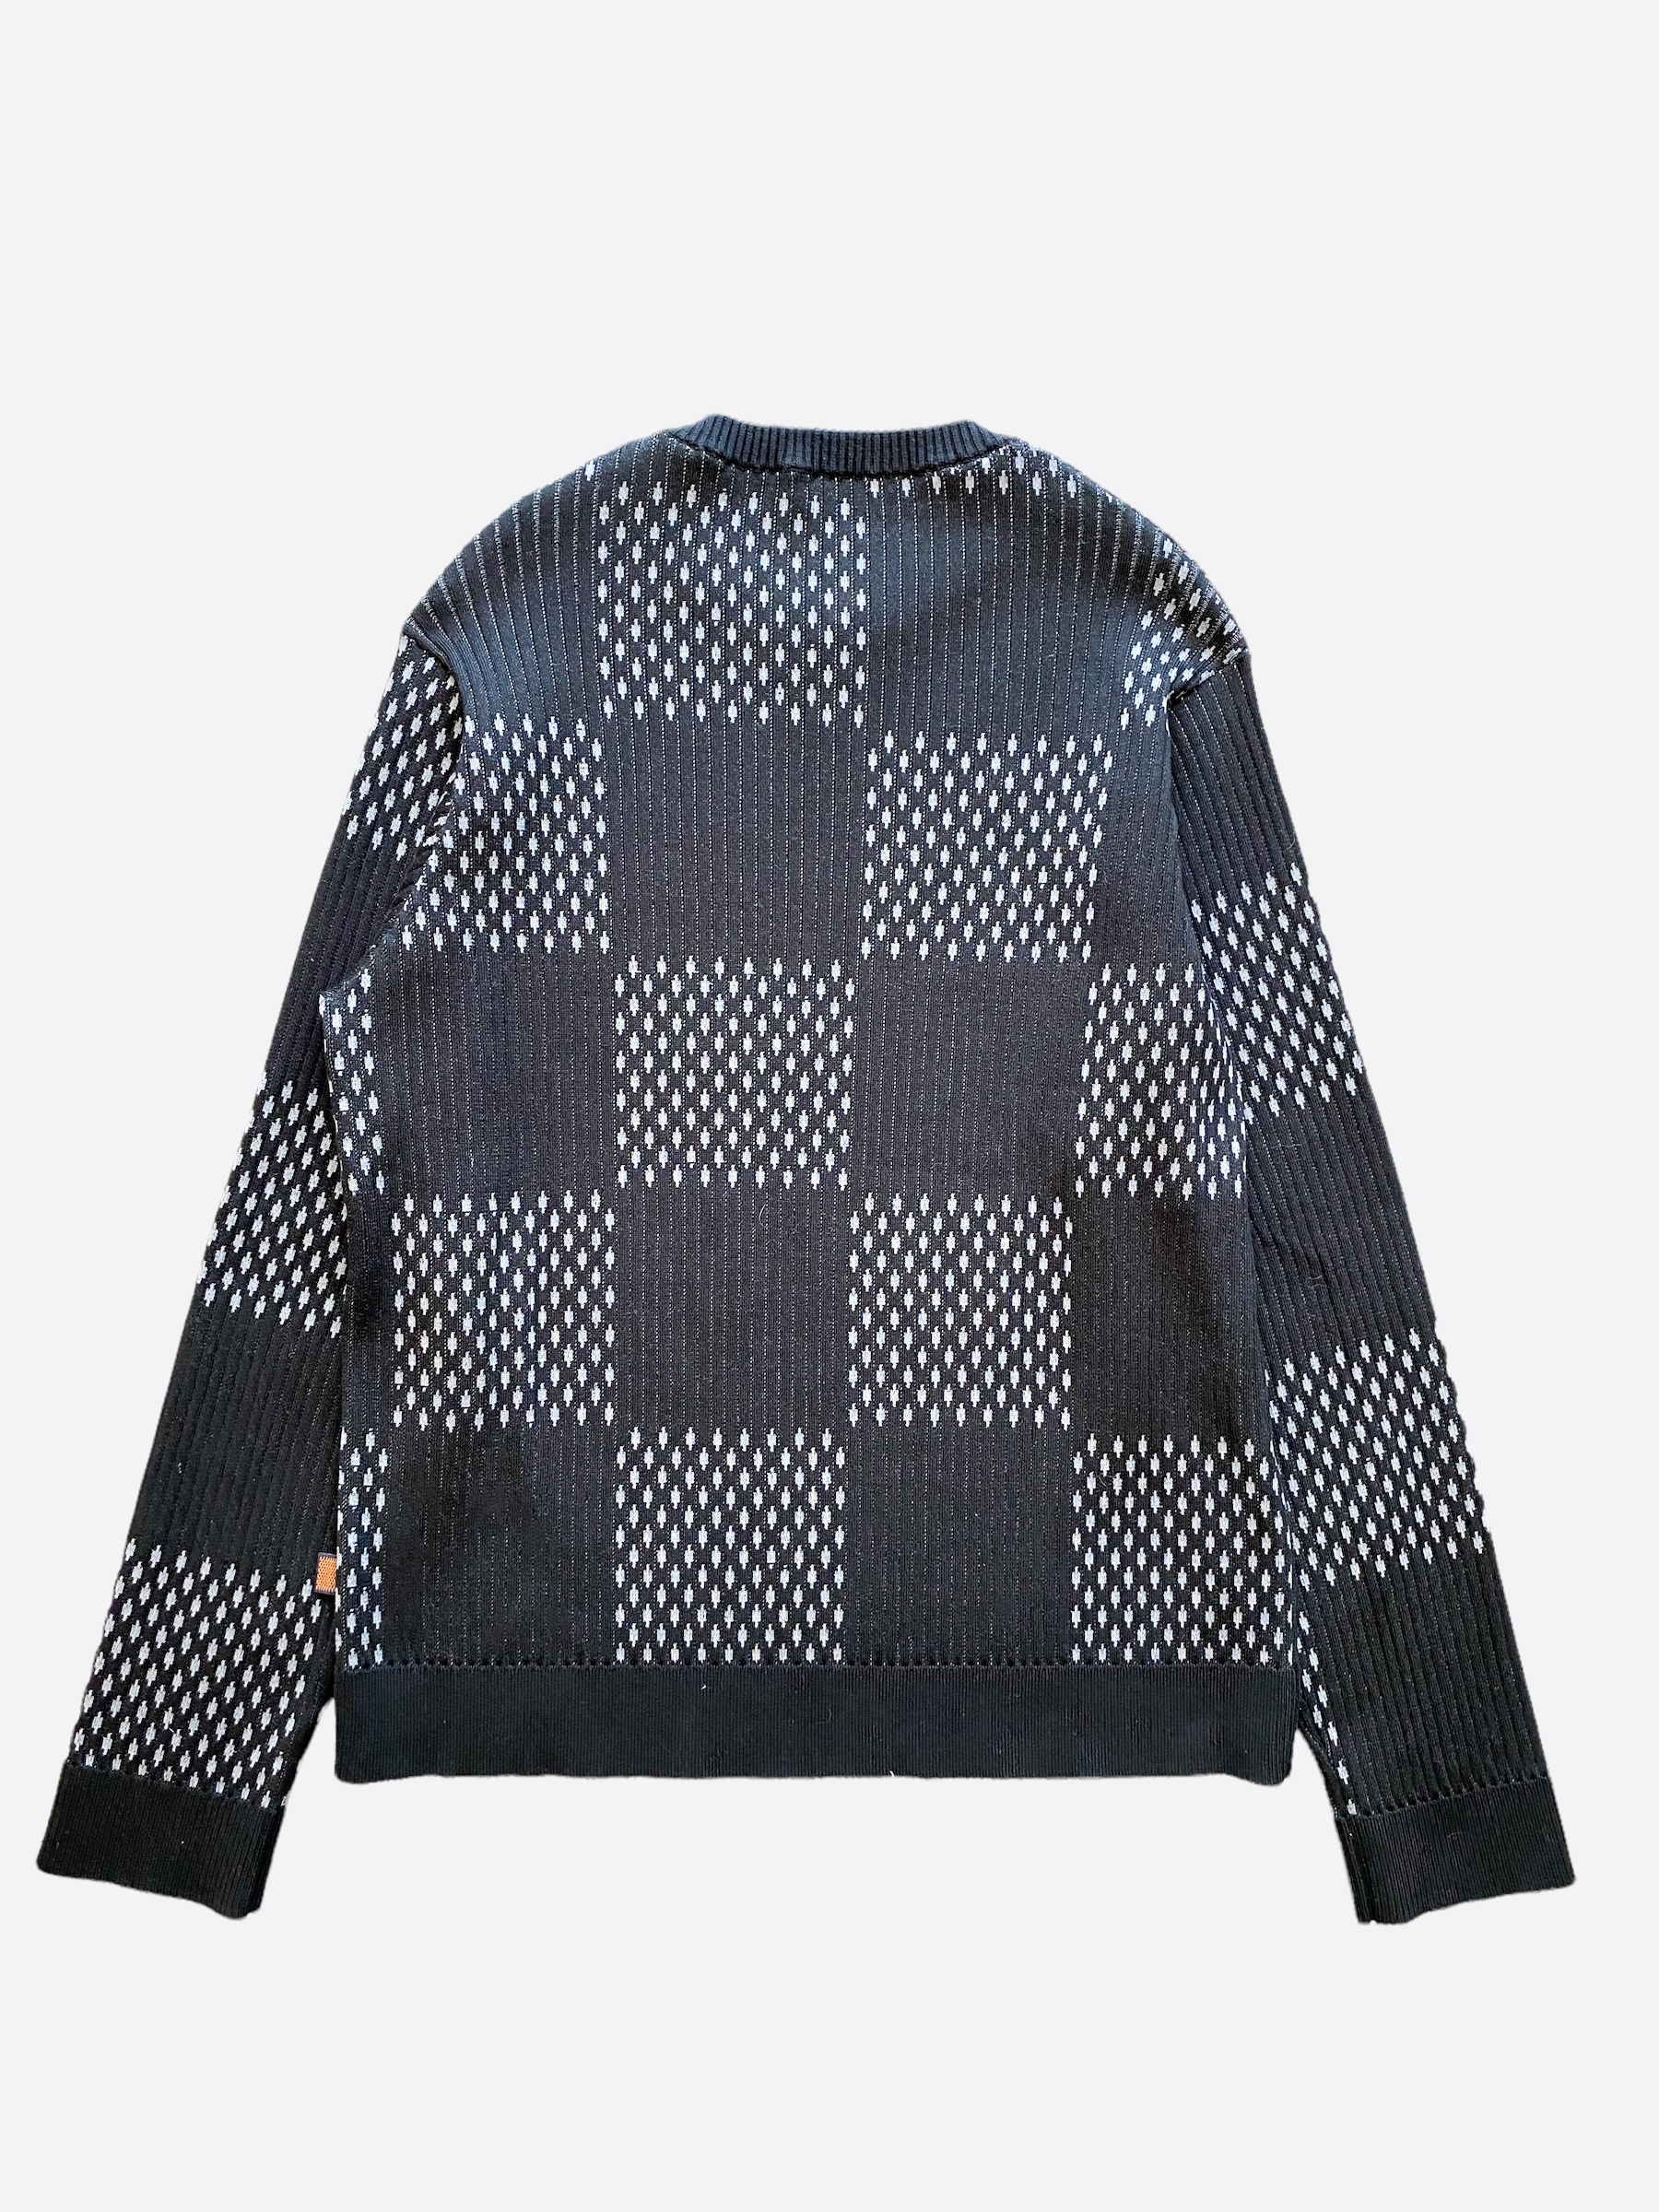 Luxury Louis Vuitton Distorted Damier Crewneck Jumper Sweatshirt